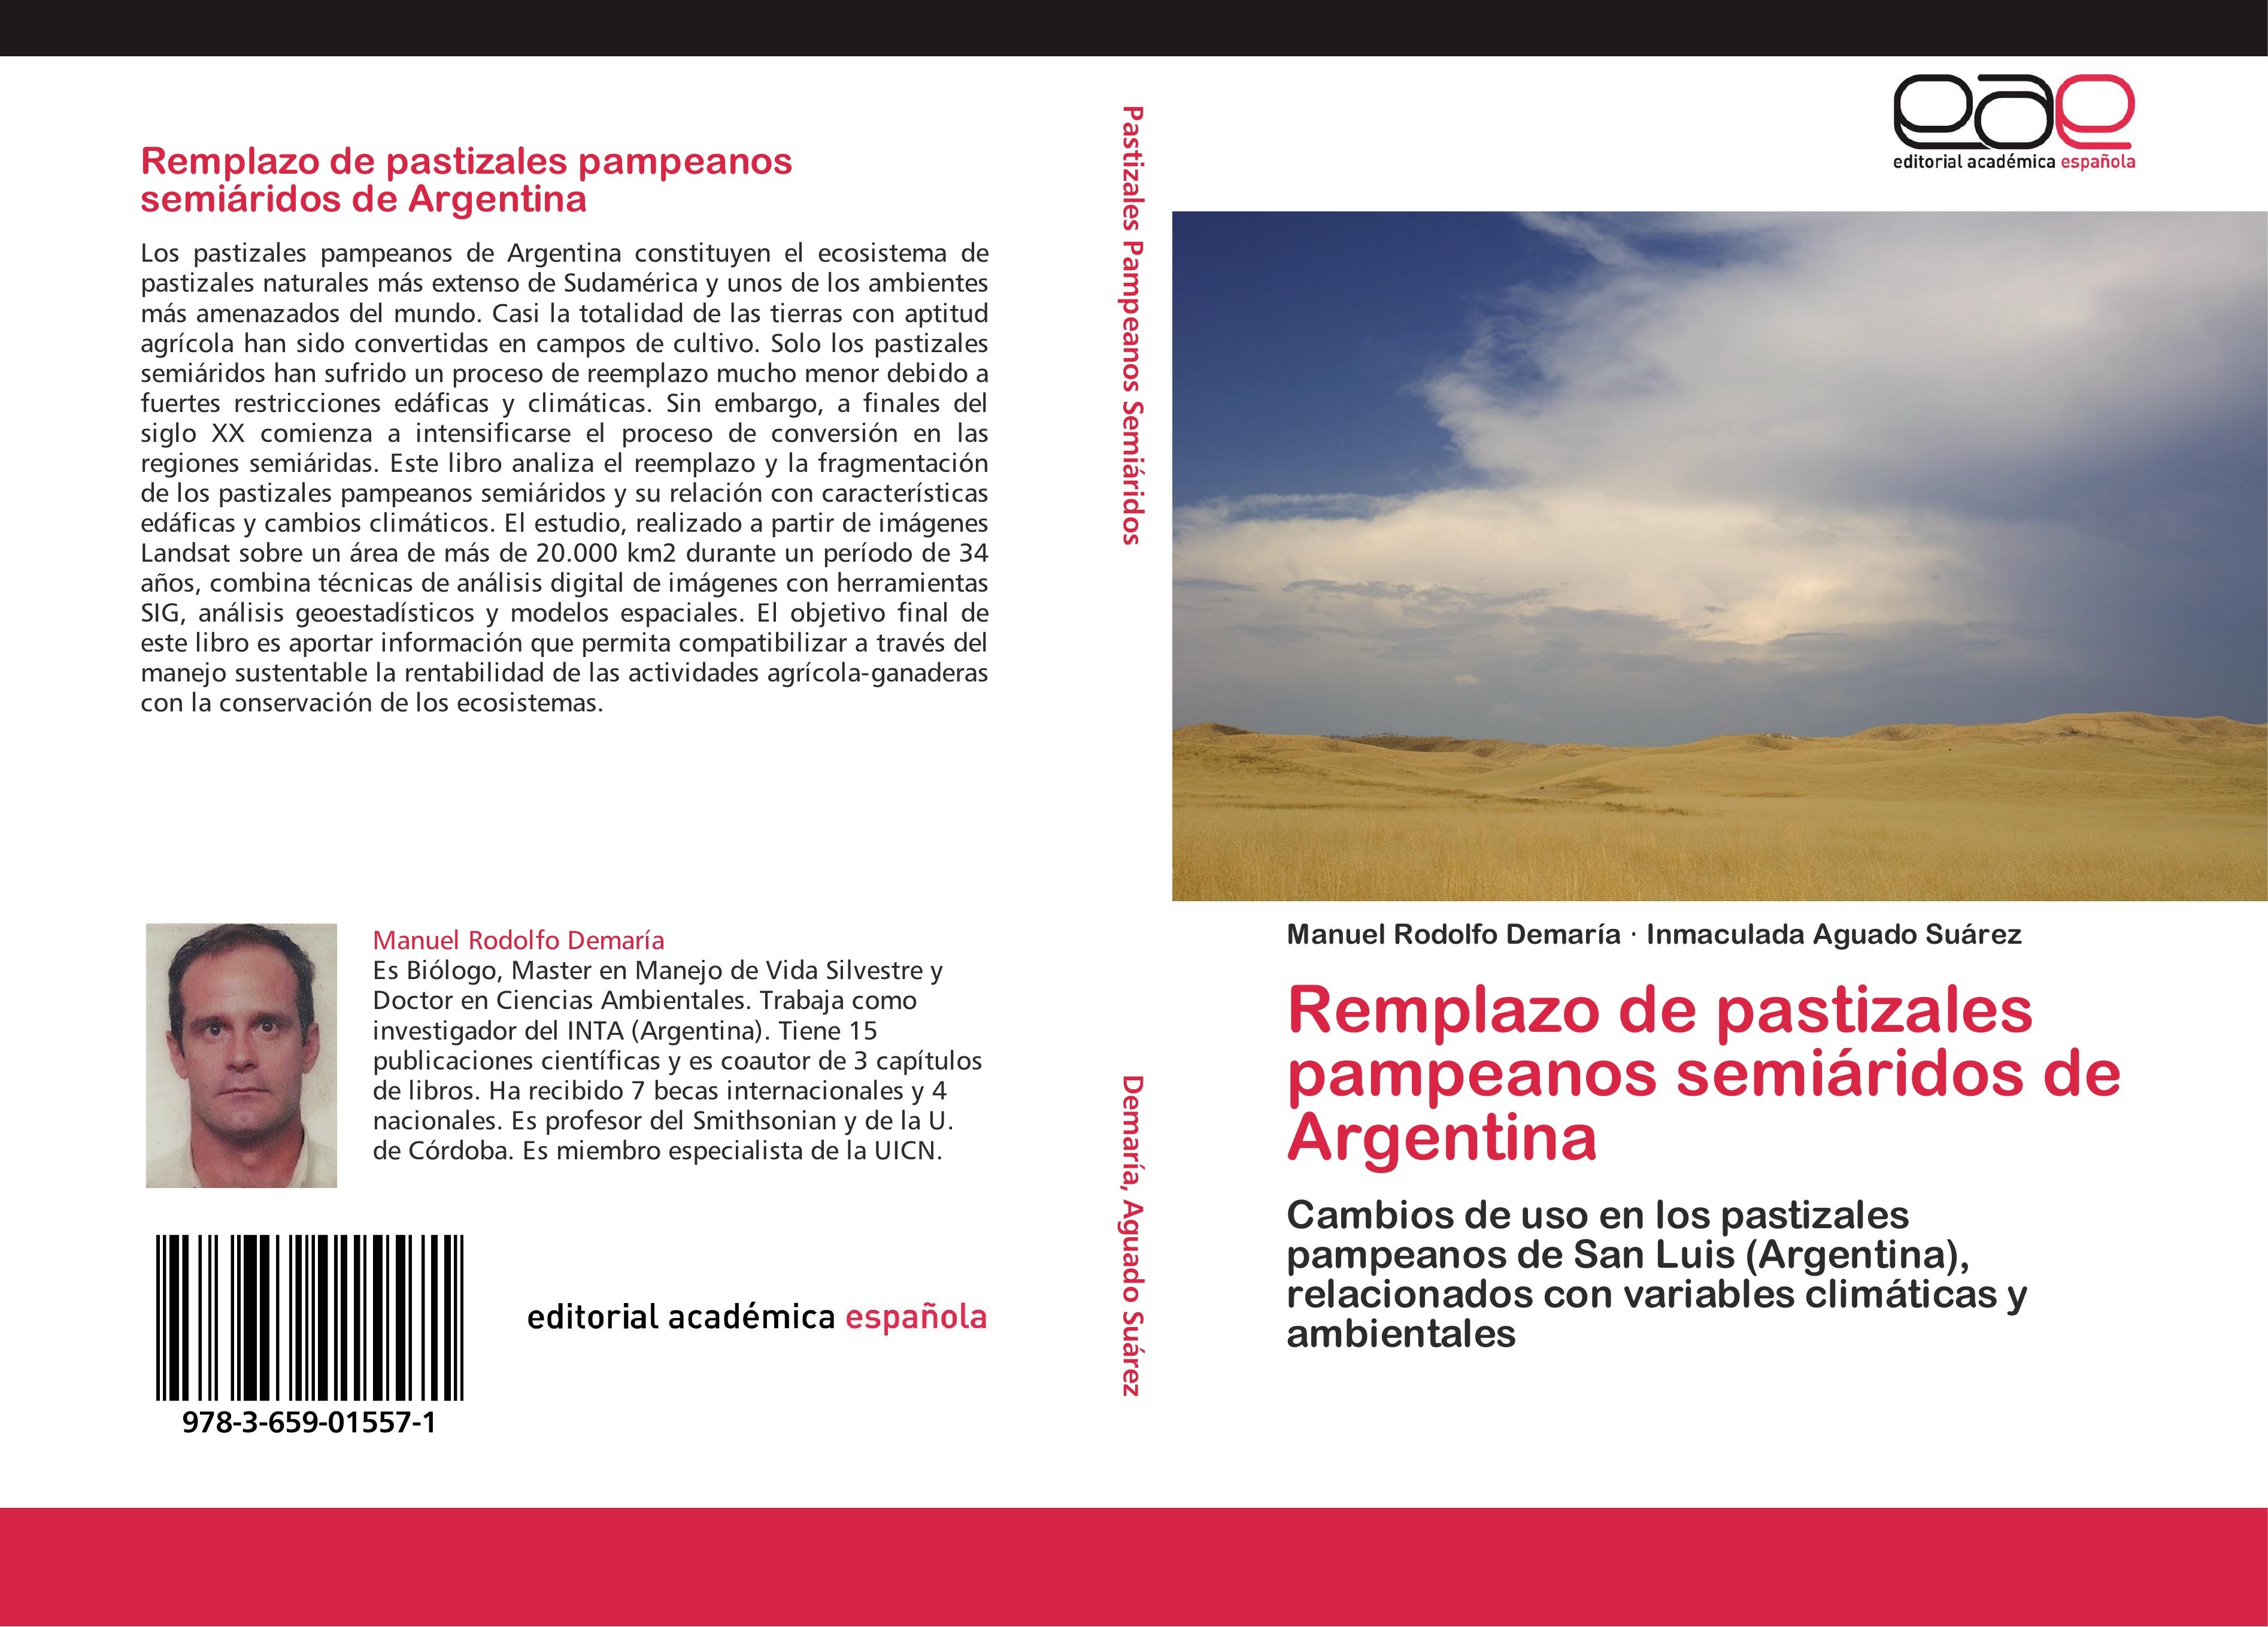 Remplazo de pastizales pampeanos semiáridos de Argentina - Manuel Rodolfo Demaría Inmaculada Aguado Suárez